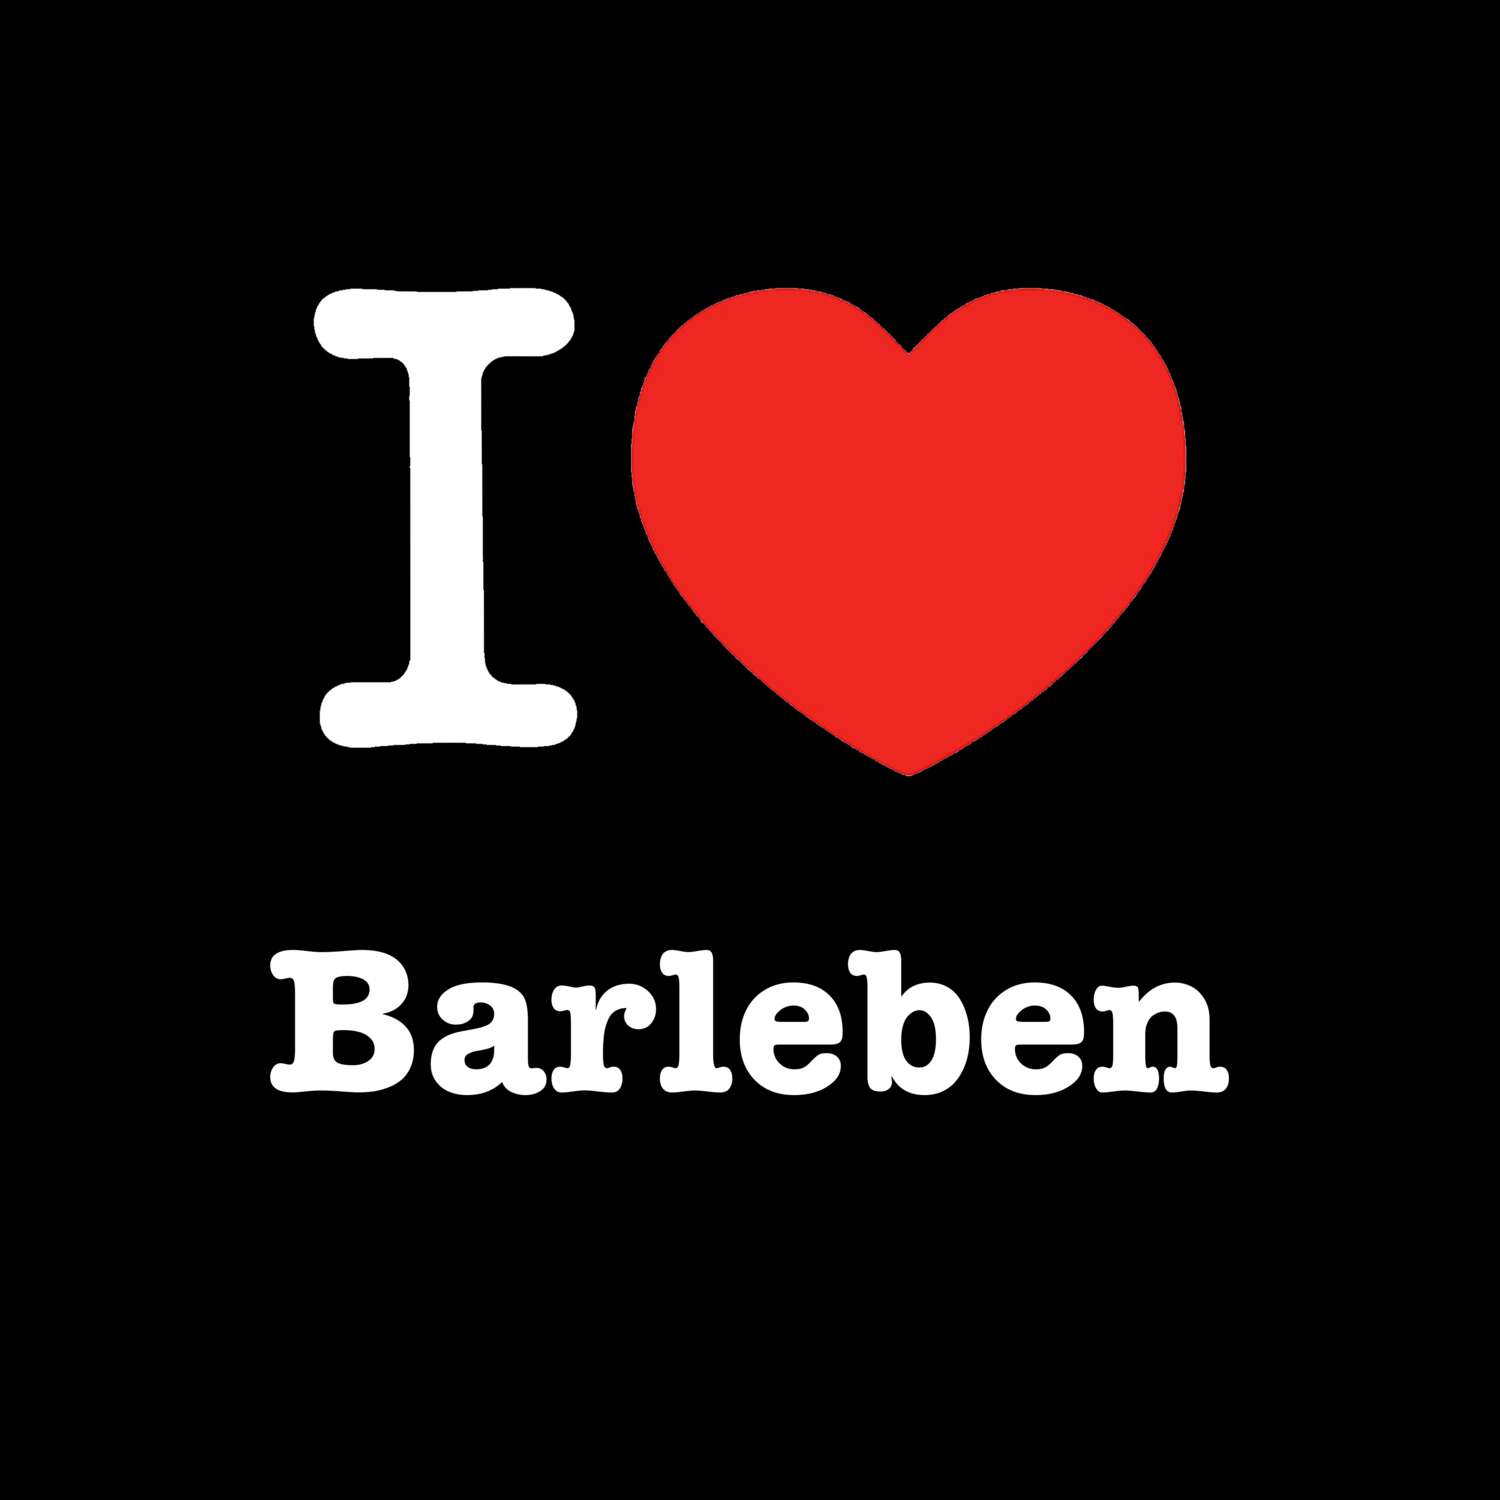 Barleben T-Shirt »I love«